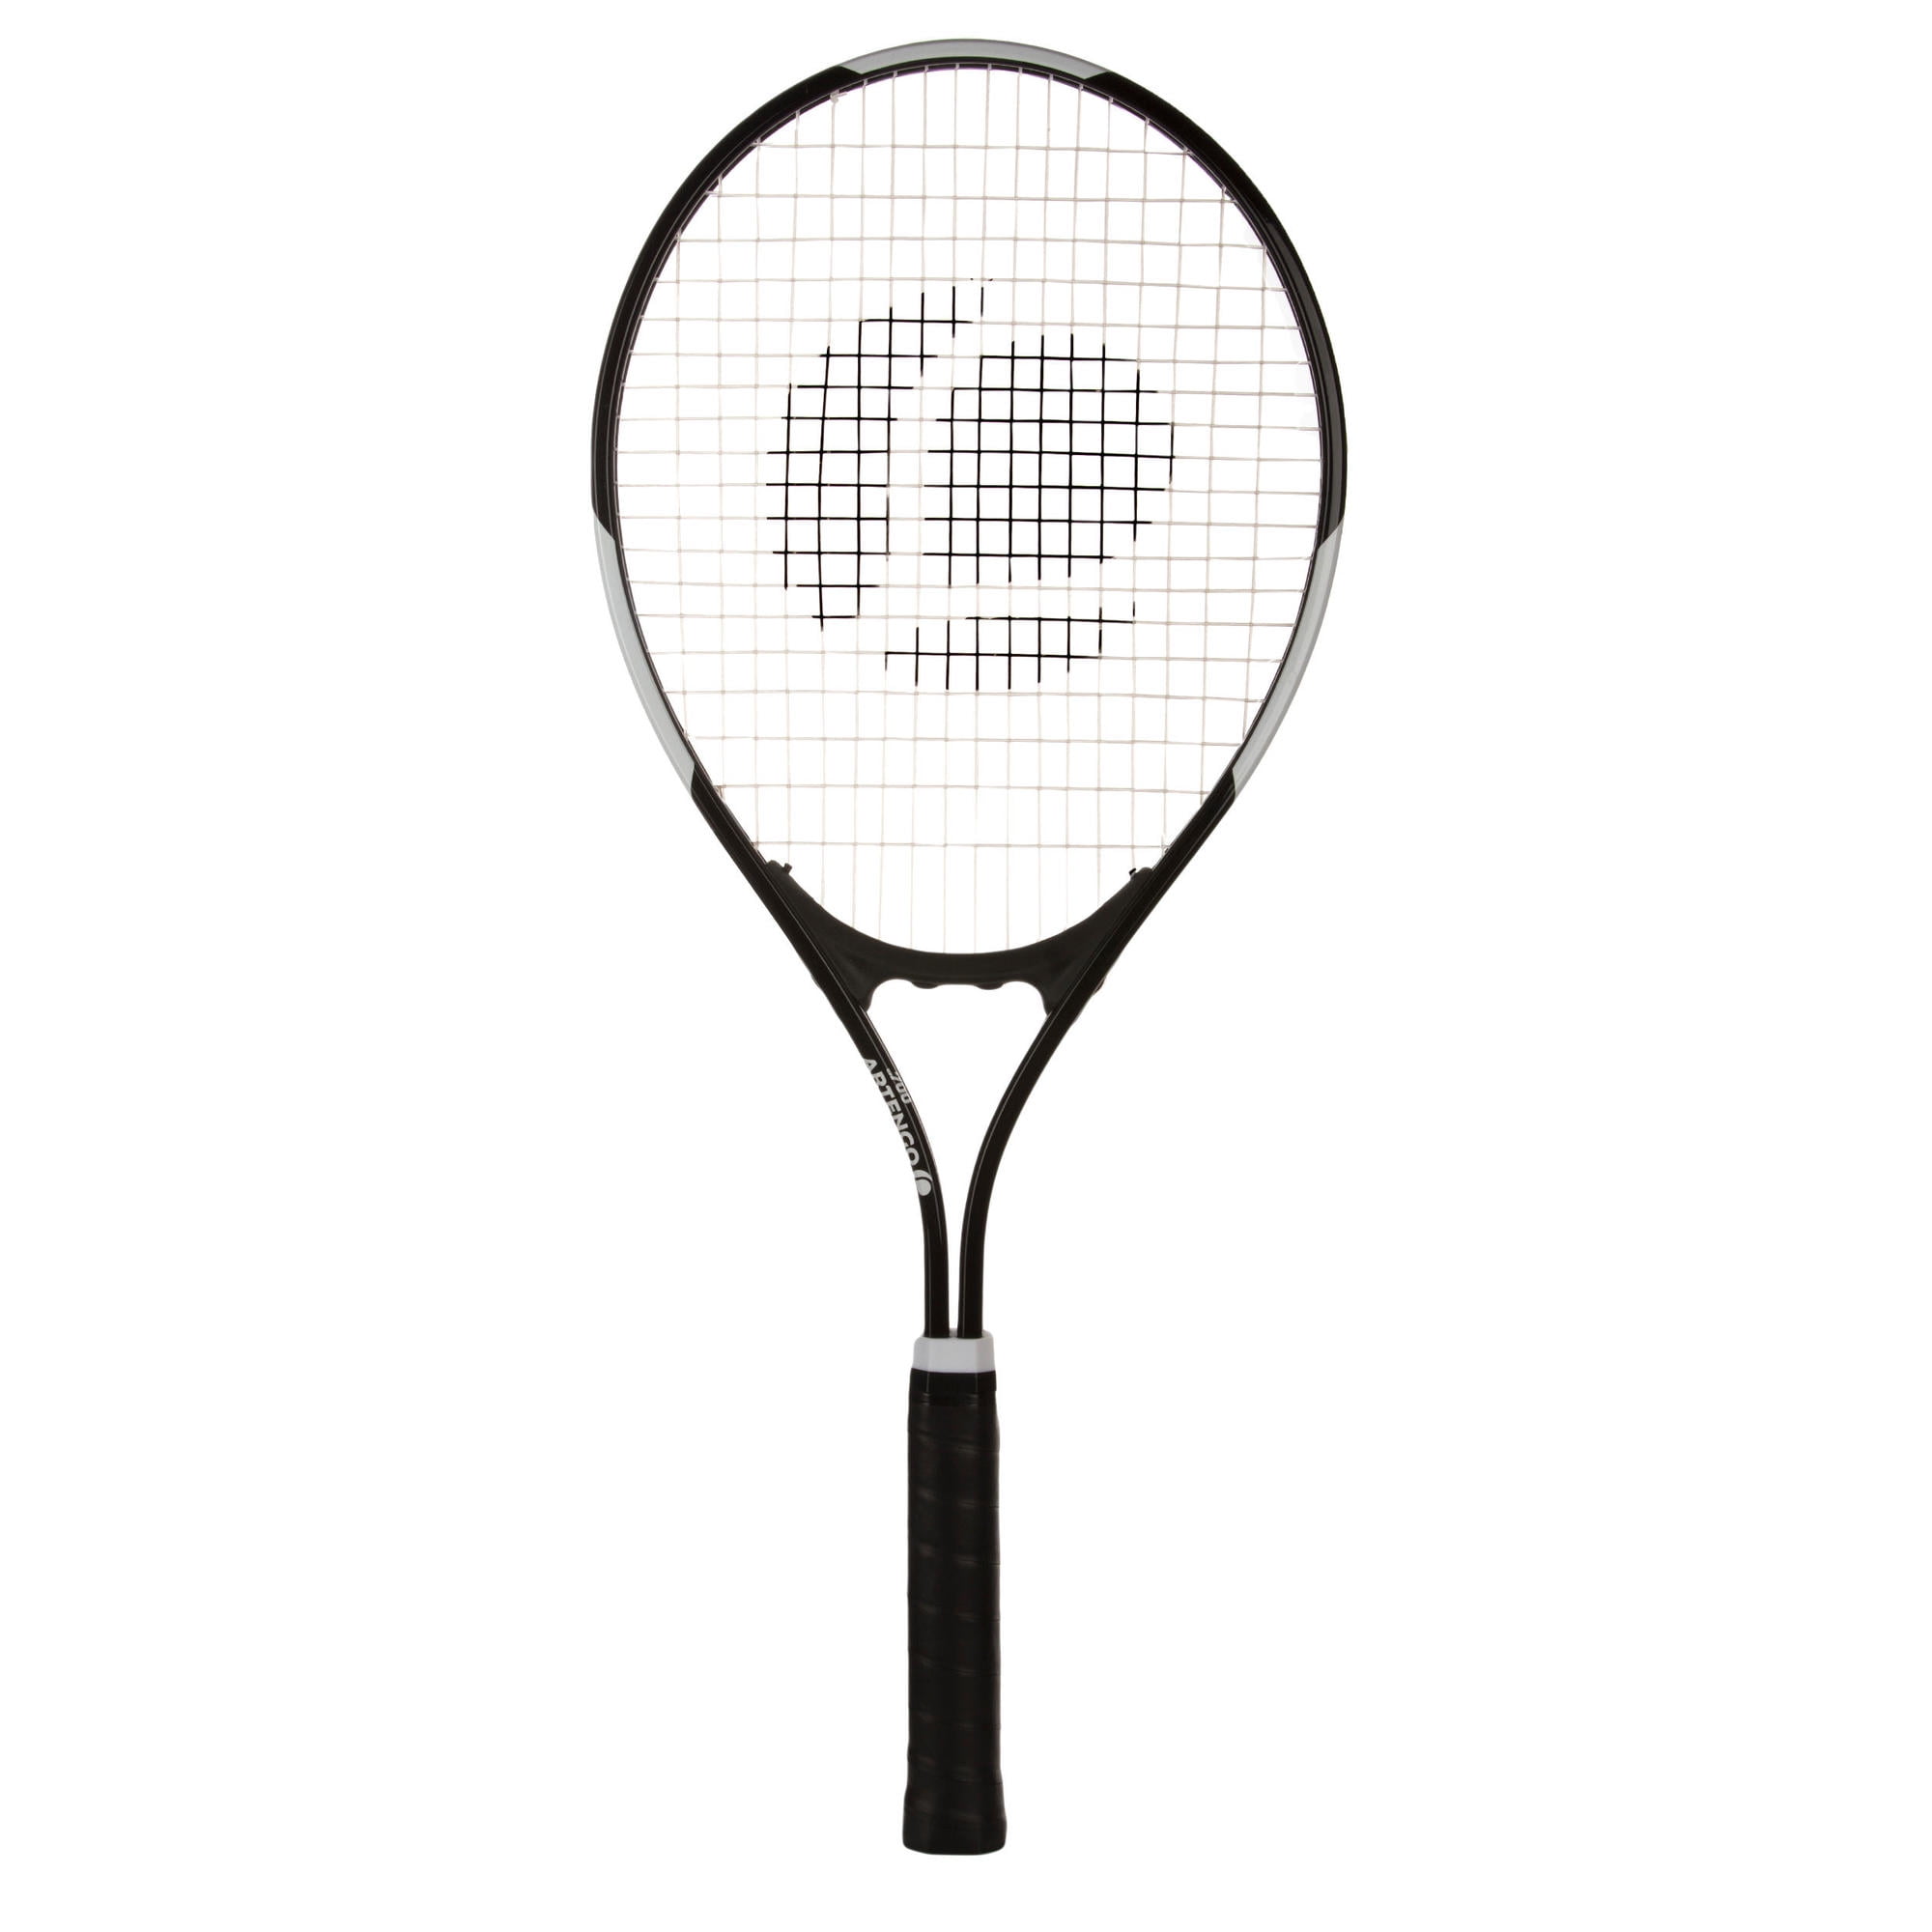 Bij elkaar passen Victor juni Decathlon Artengo TR100, 27" Tennis Racket for Adults, 108 in² Head Size,  9.3 oz, Black - Walmart.com